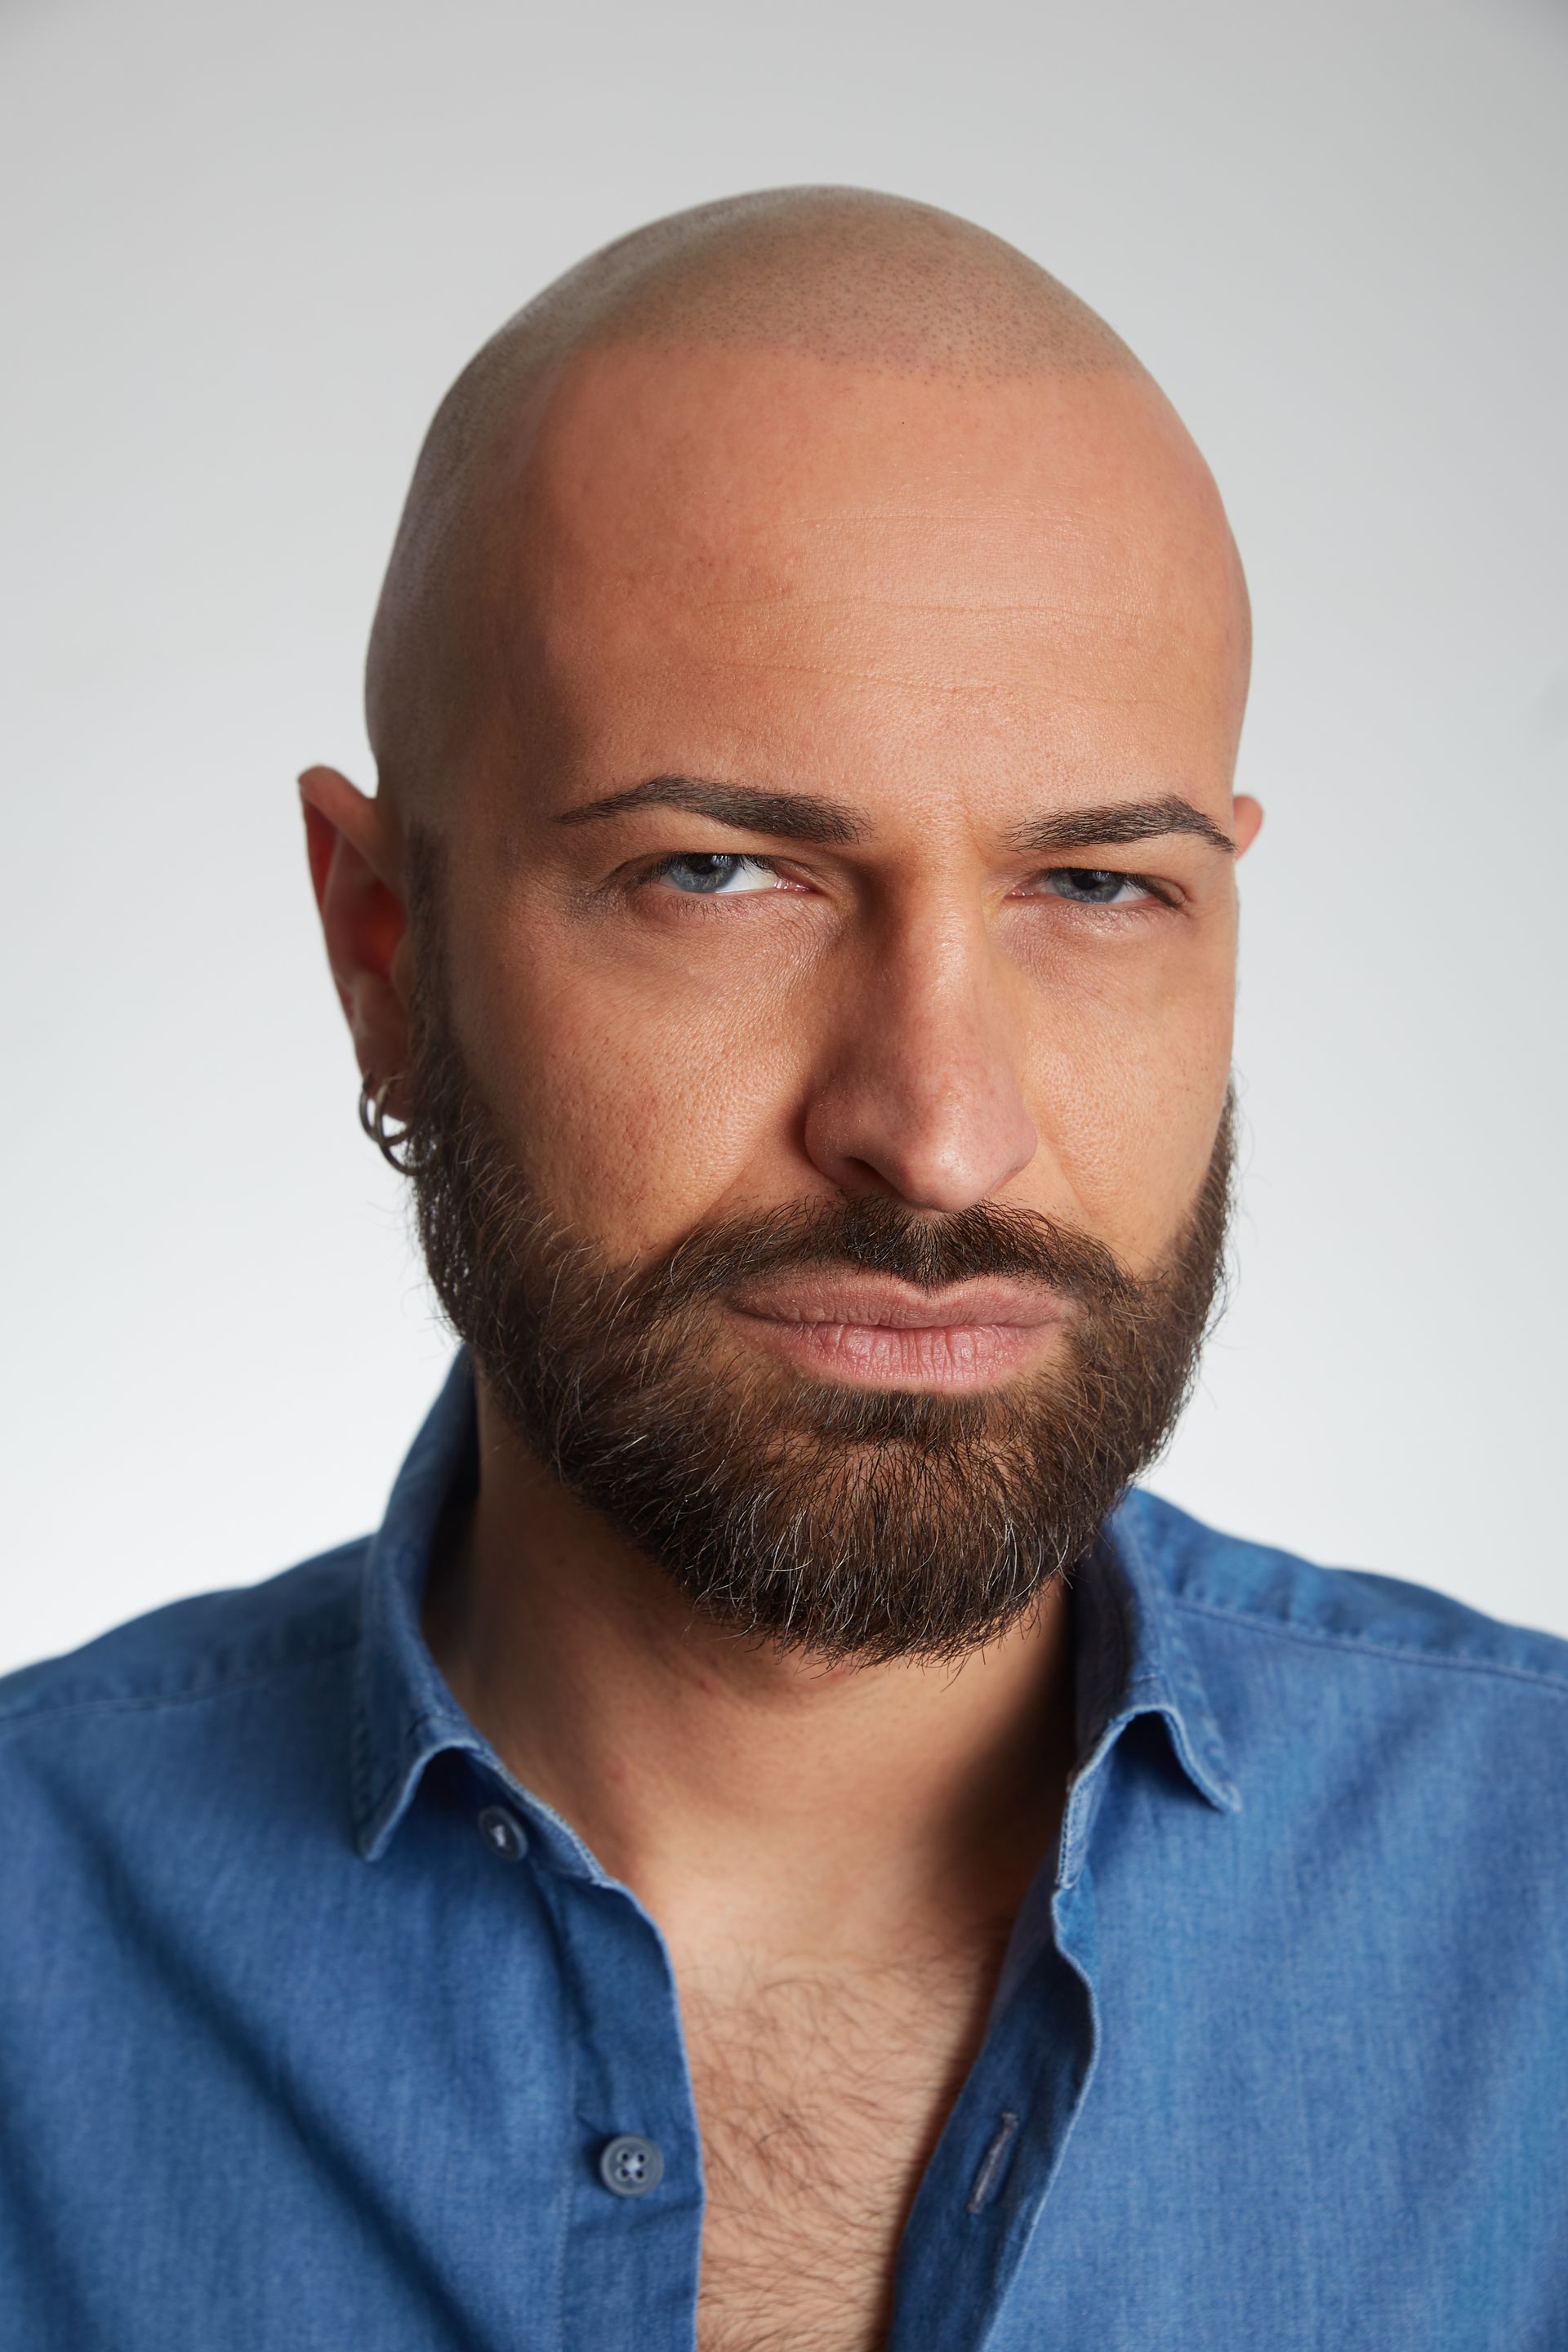 a bald man with a beard is wearing a blue shirt .